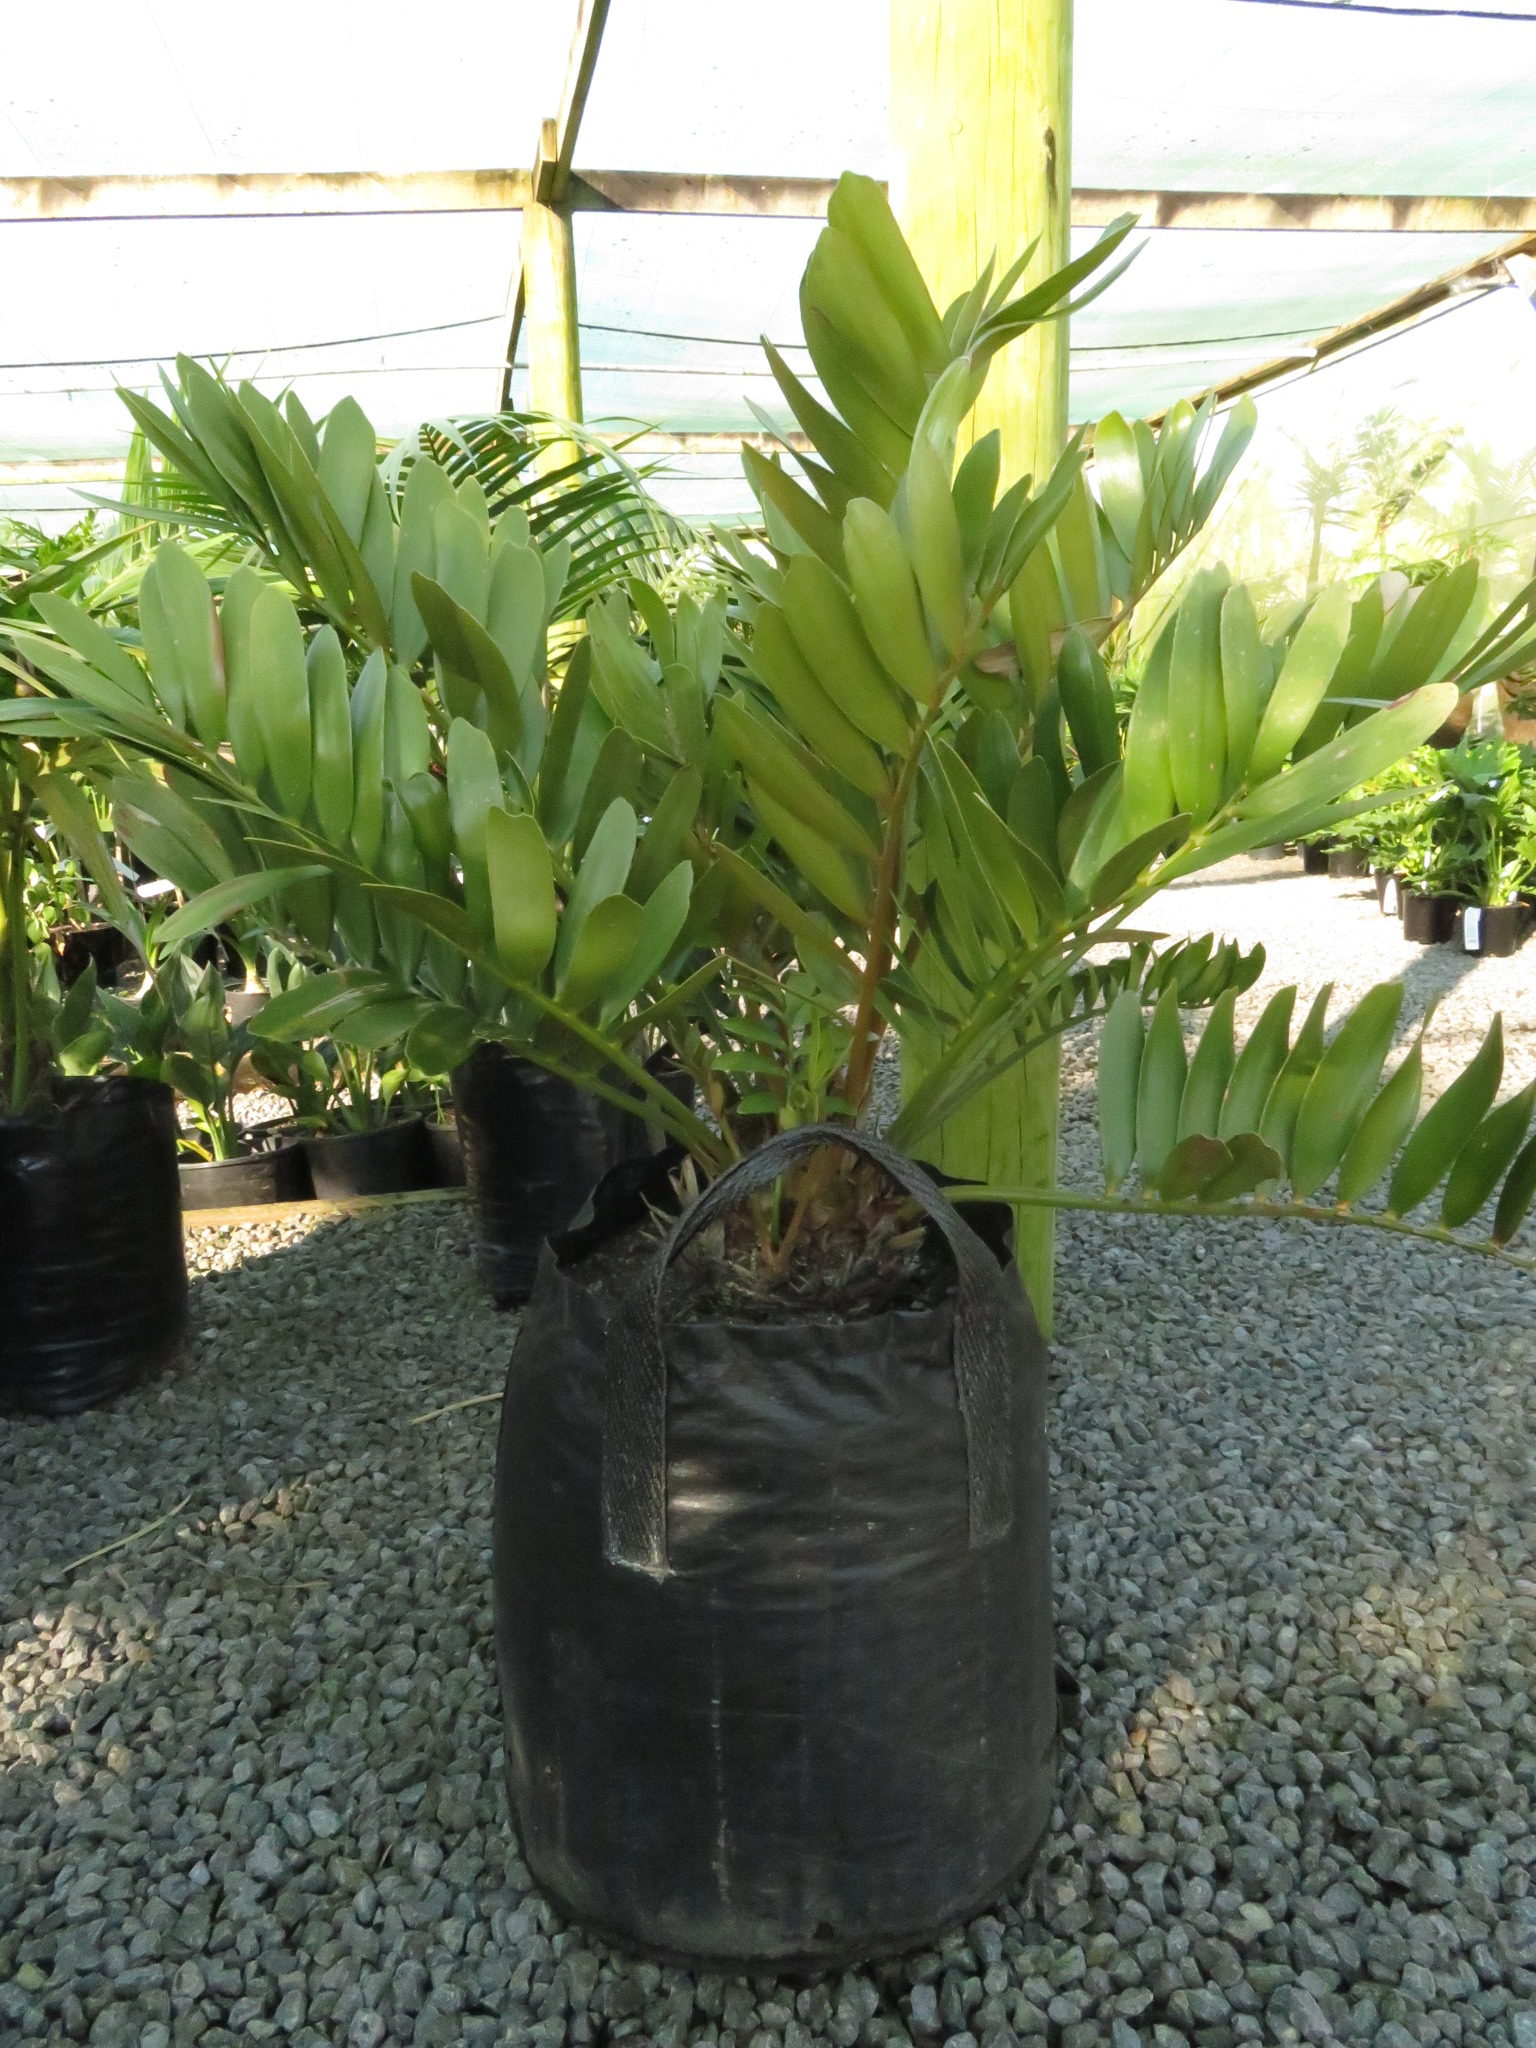 zamia plant cardboard furfuracea cycads palm